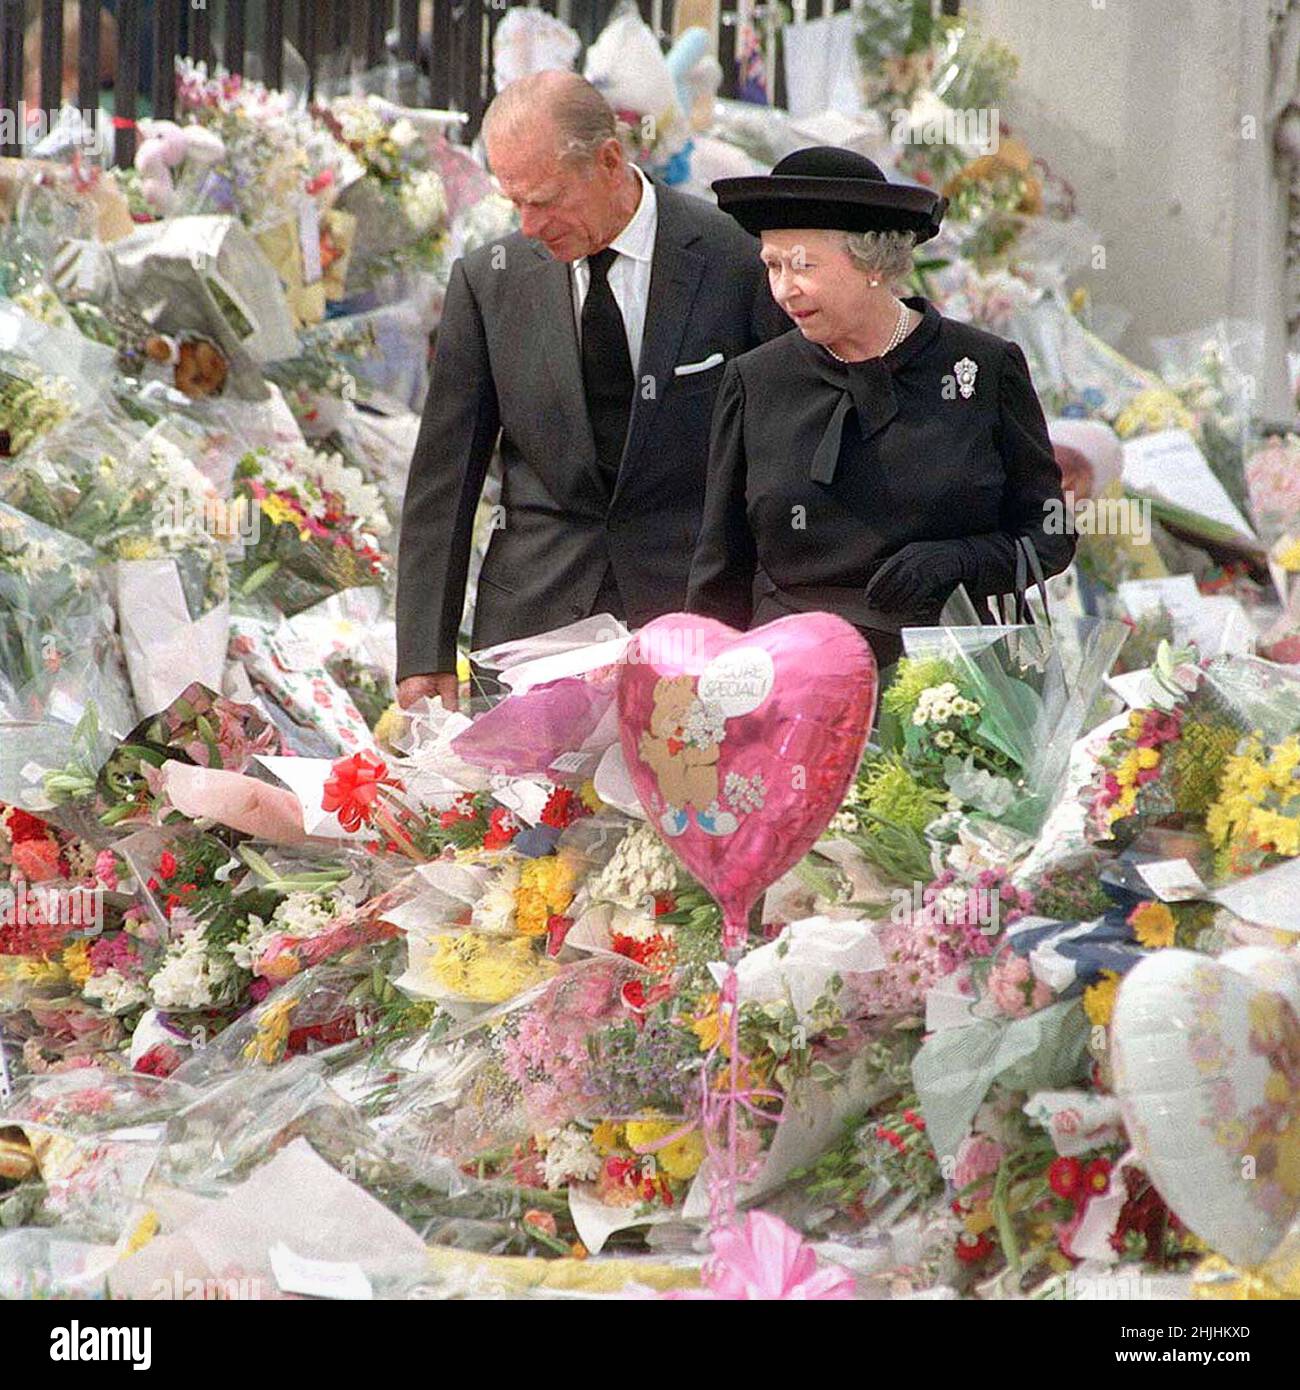 Foto di archivio datata 05/07/1997 della Regina e del Duca di Edimburgo vedere gli omaggi floreali a Diana, Principessa di Galles, a Buckingham Palace. Data di emissione: Domenica 30 gennaio 2022. Foto Stock